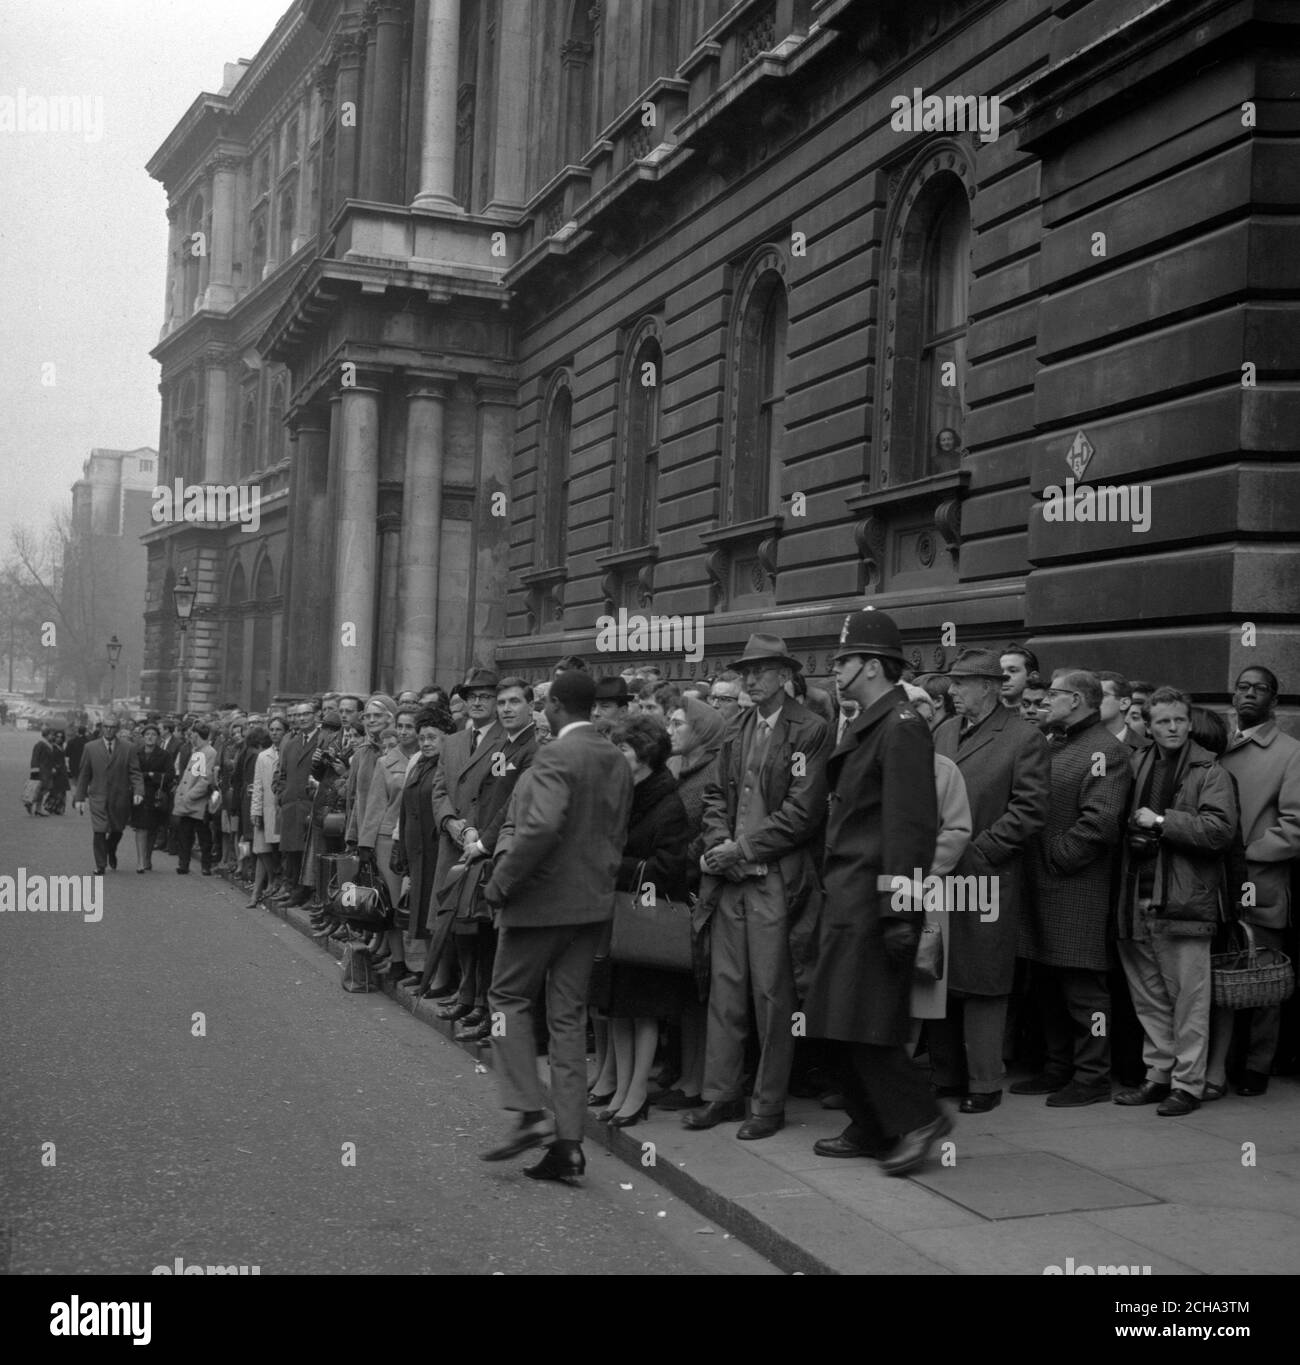 Affollato marciapiede a Downing Street, Londra, il Lunedi dopo la svalutazione fine settimana della sterlina. La folla ha guardato i ministri venire e partire per un incontro di uno dei comitati di Gabinetto. Foto Stock